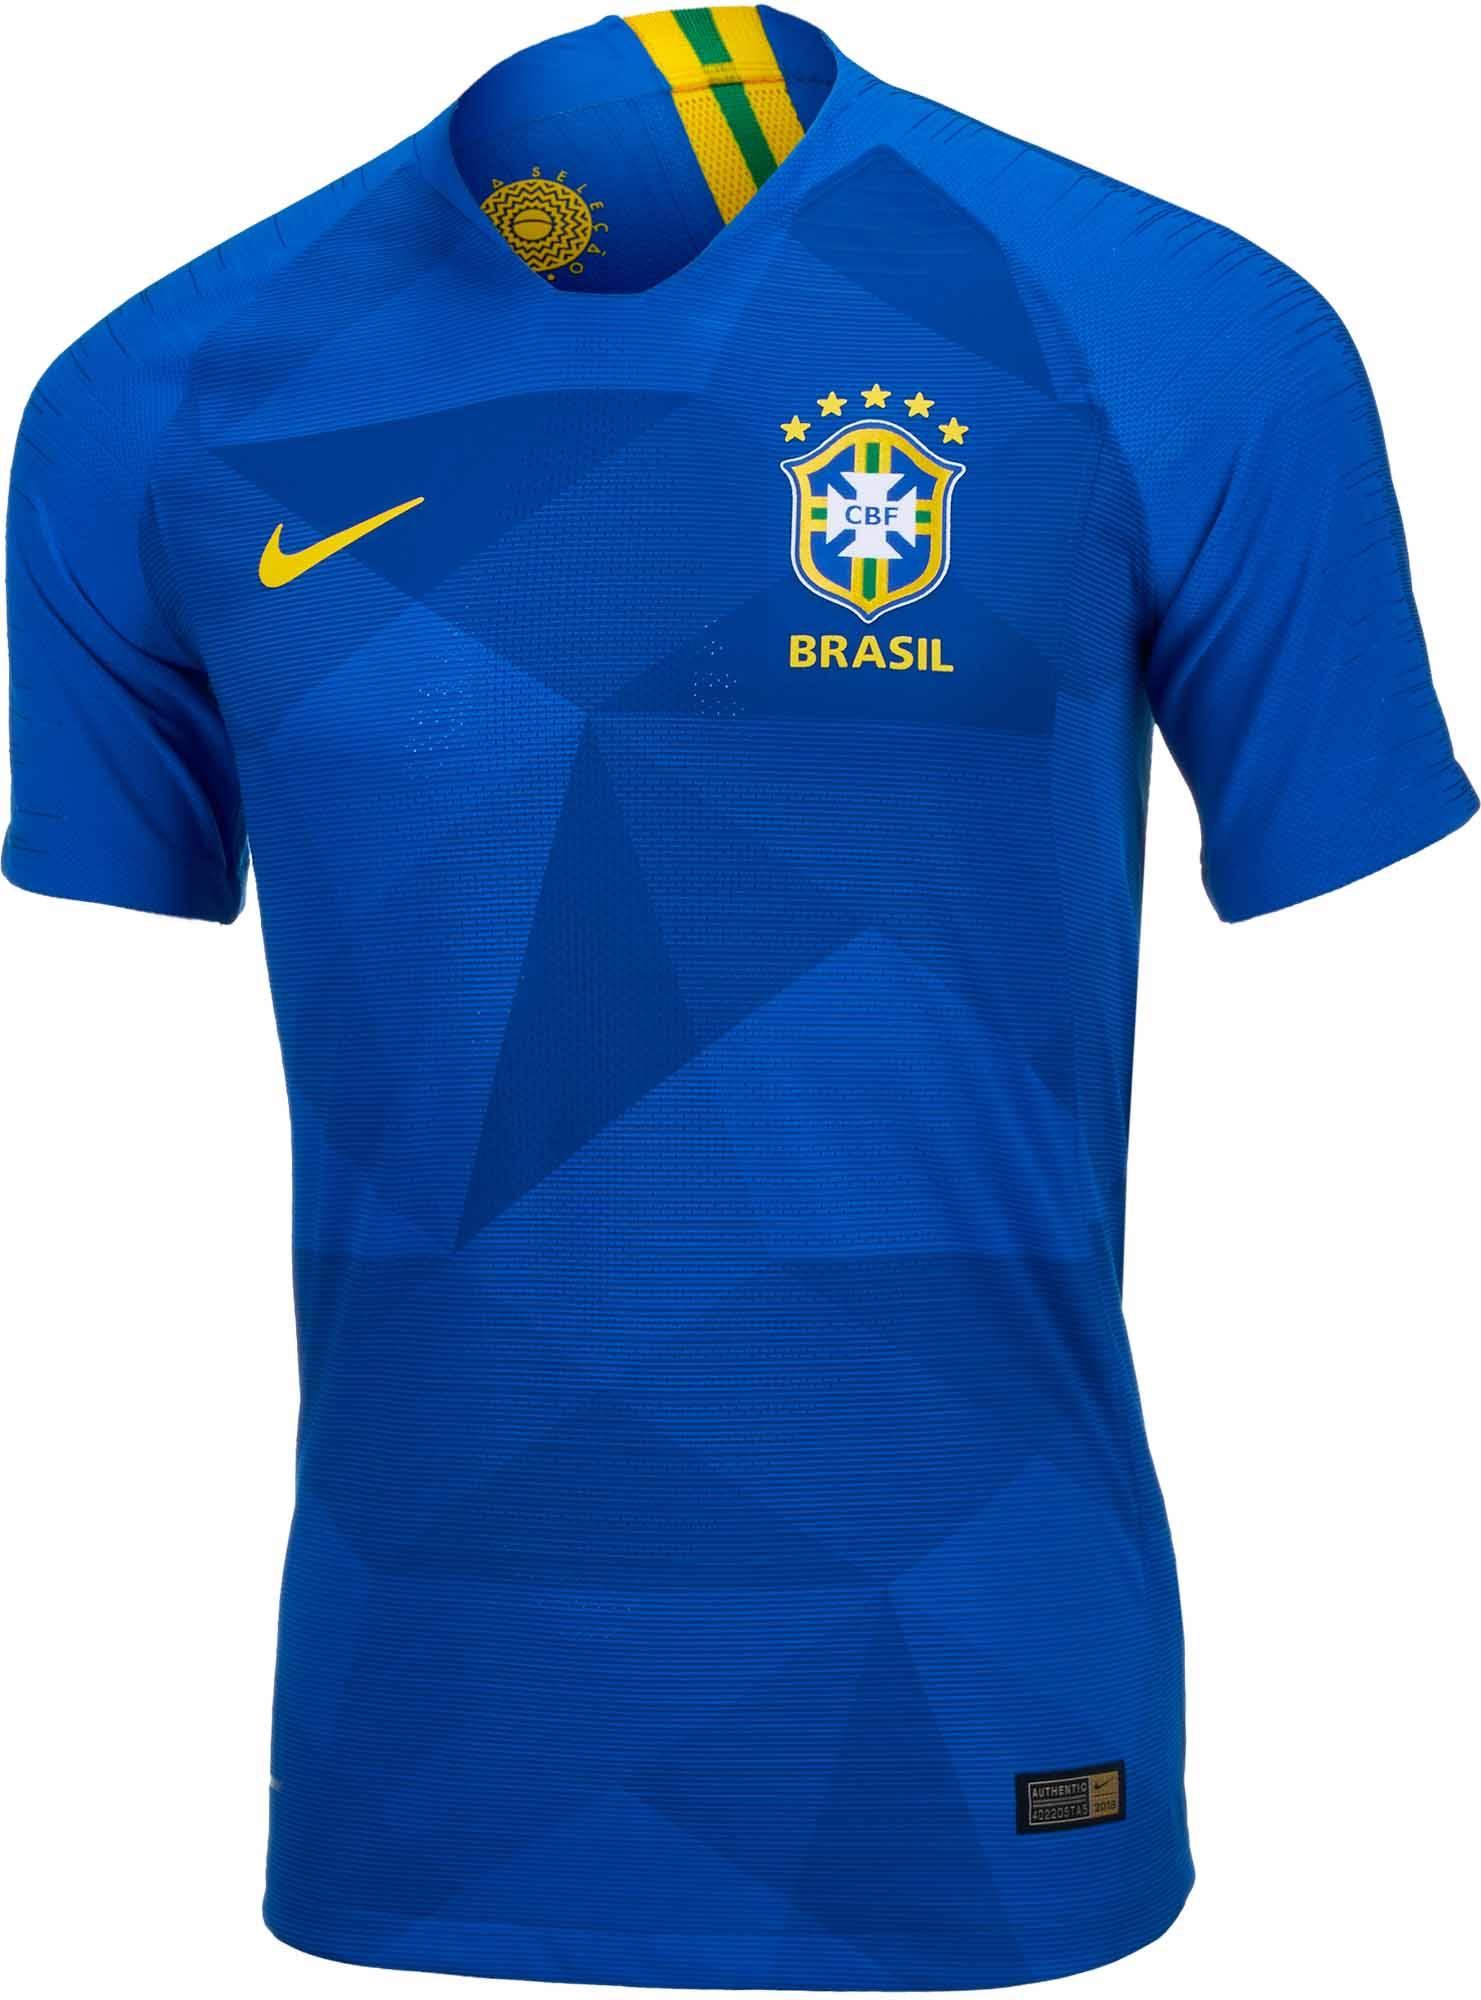 Nike Brazil Match Jersey 2018-19 - SoccerPro